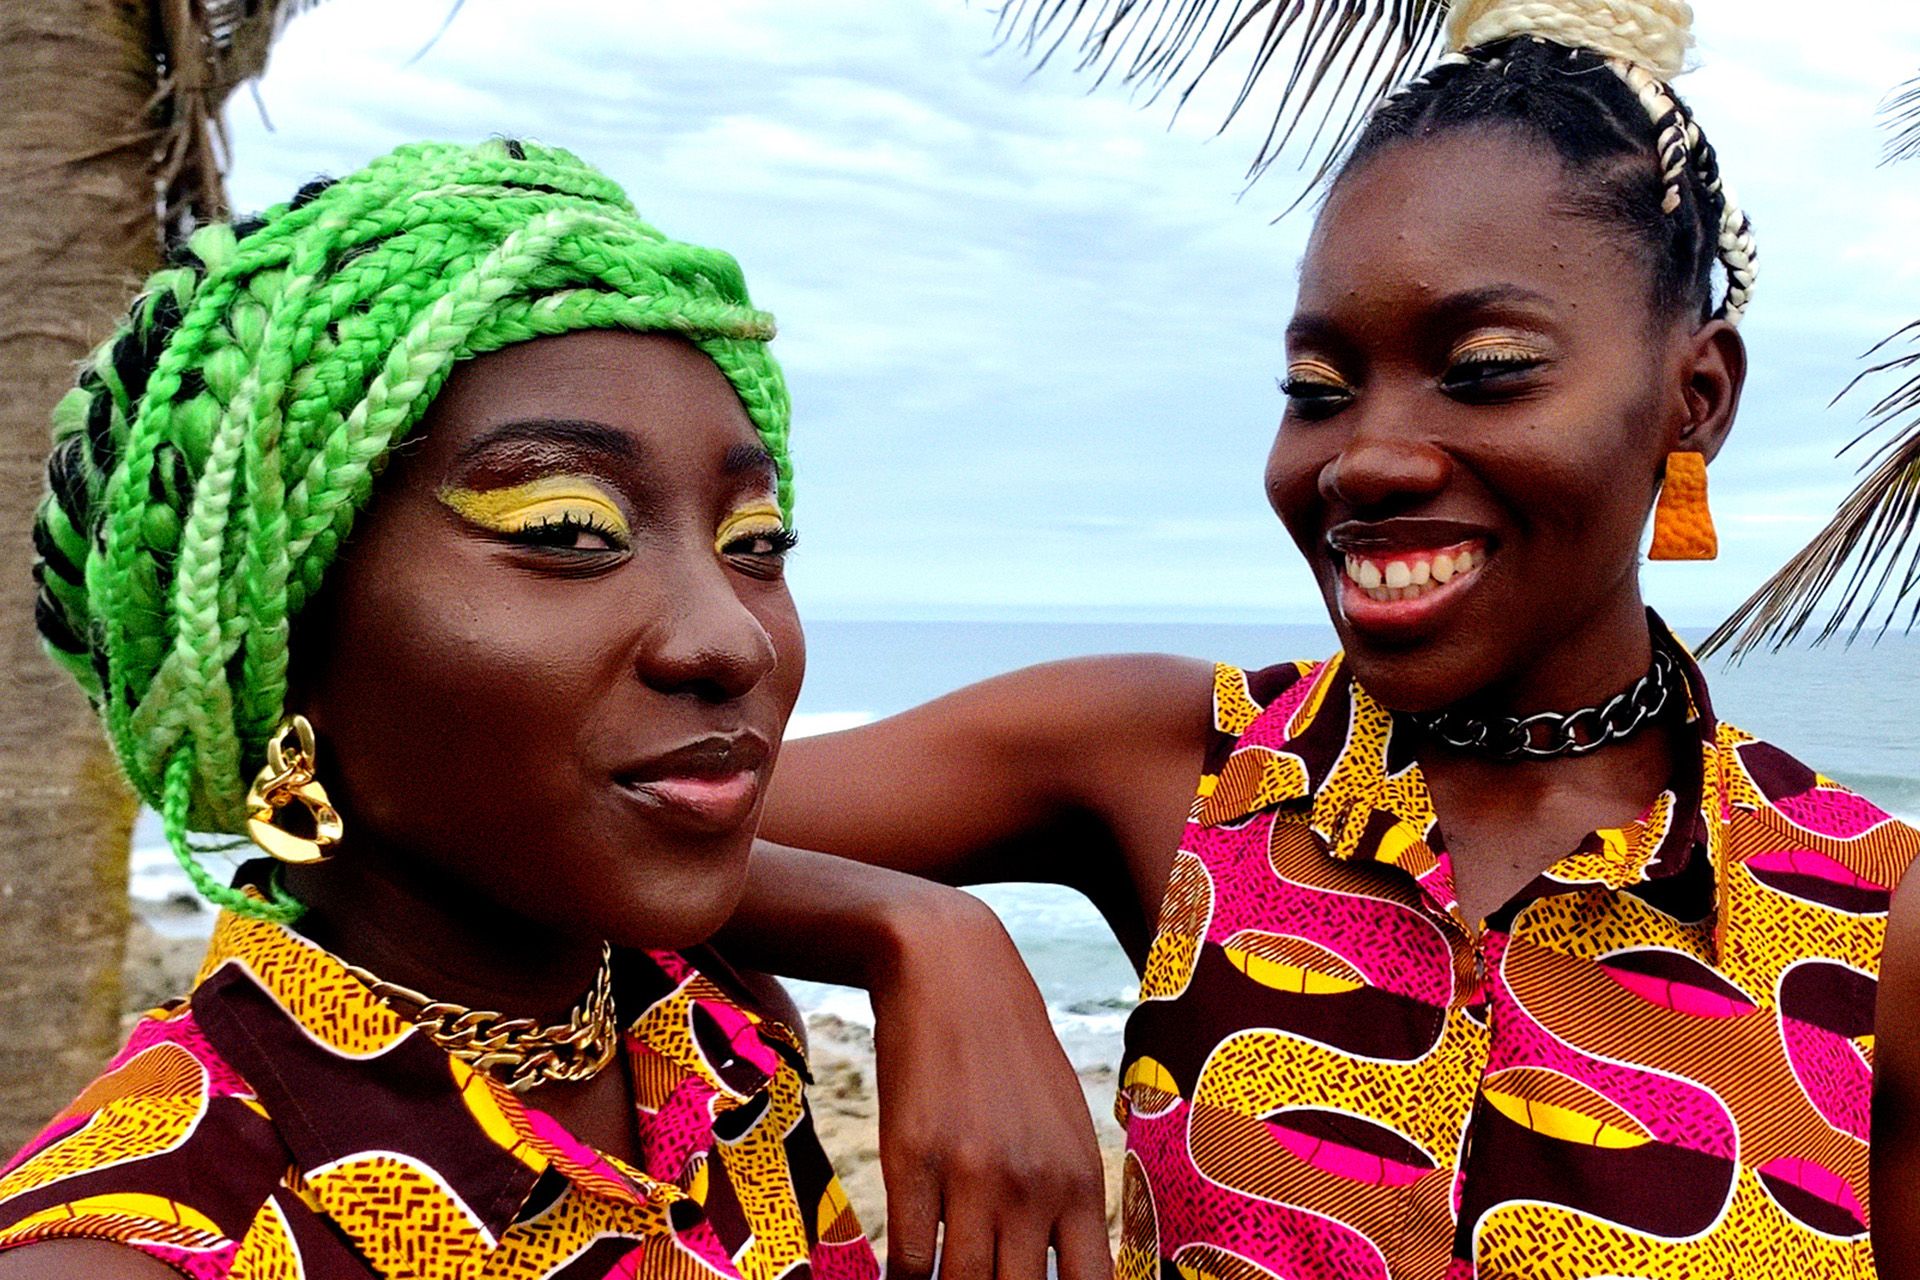 To kvinner i fargerike klær foran et palmetre